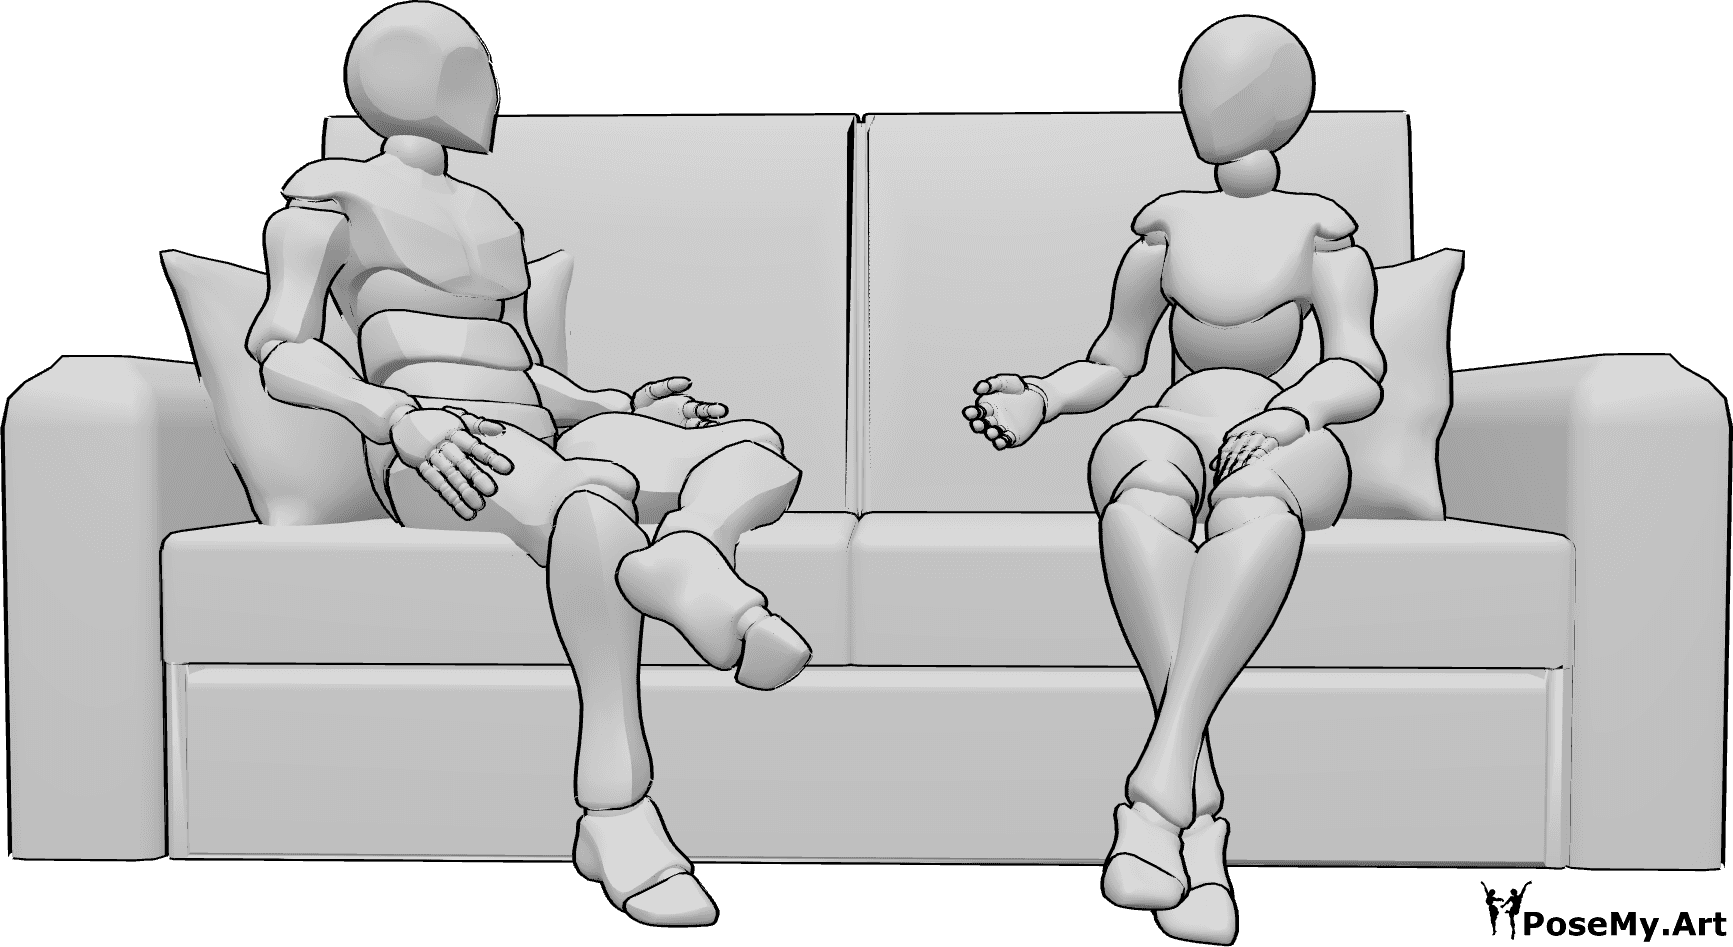 Riferimento alle pose- Posa di dialogo tra donna e uomo - Una donna e un uomo sono seduti sul divano, si guardano e parlano.